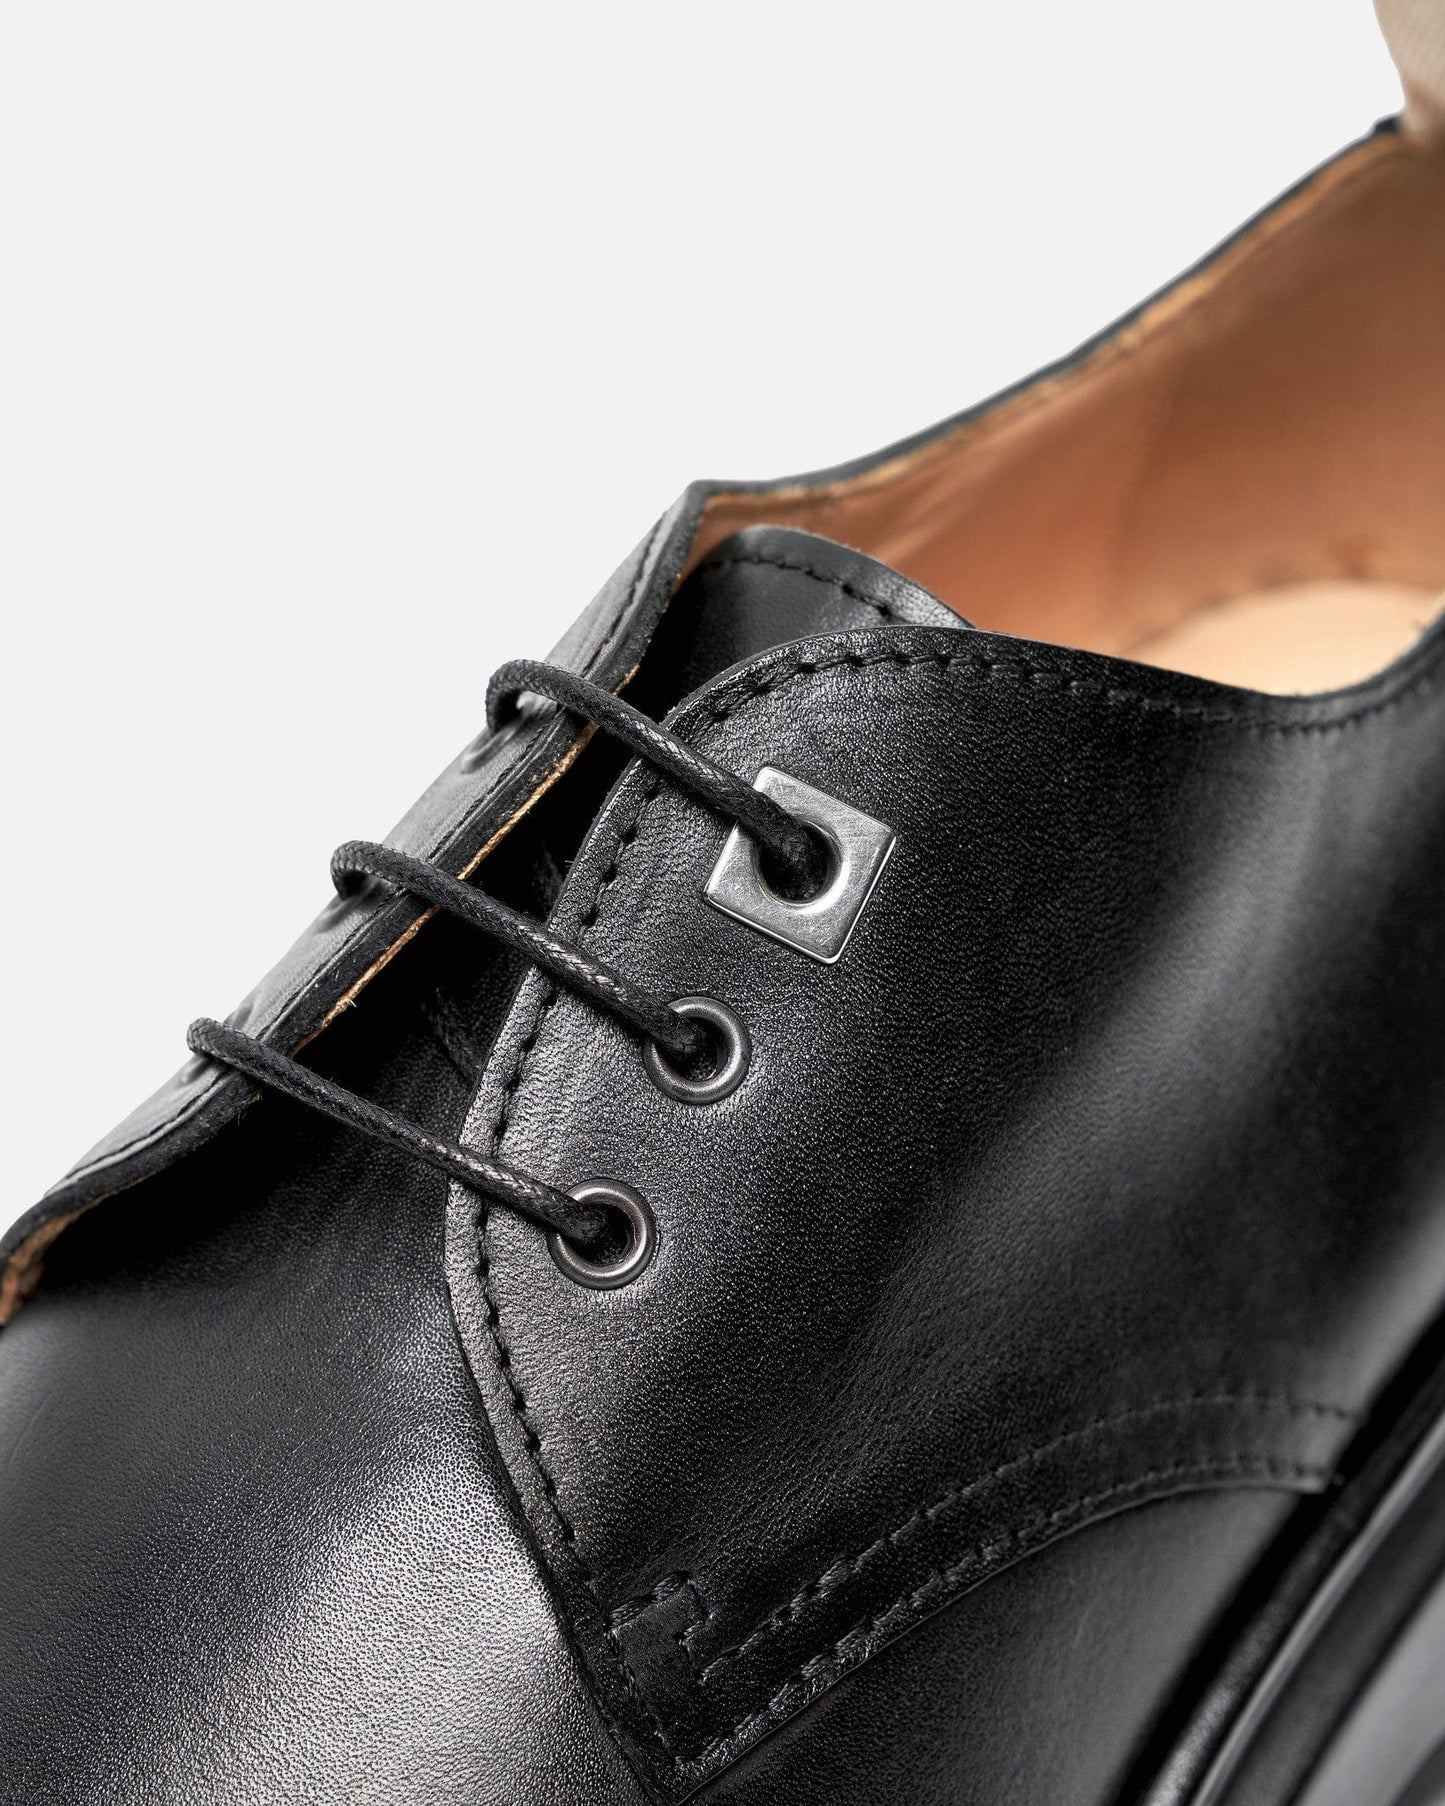 Jacquemus Men's Shoes Les Derbies Pavane in Black